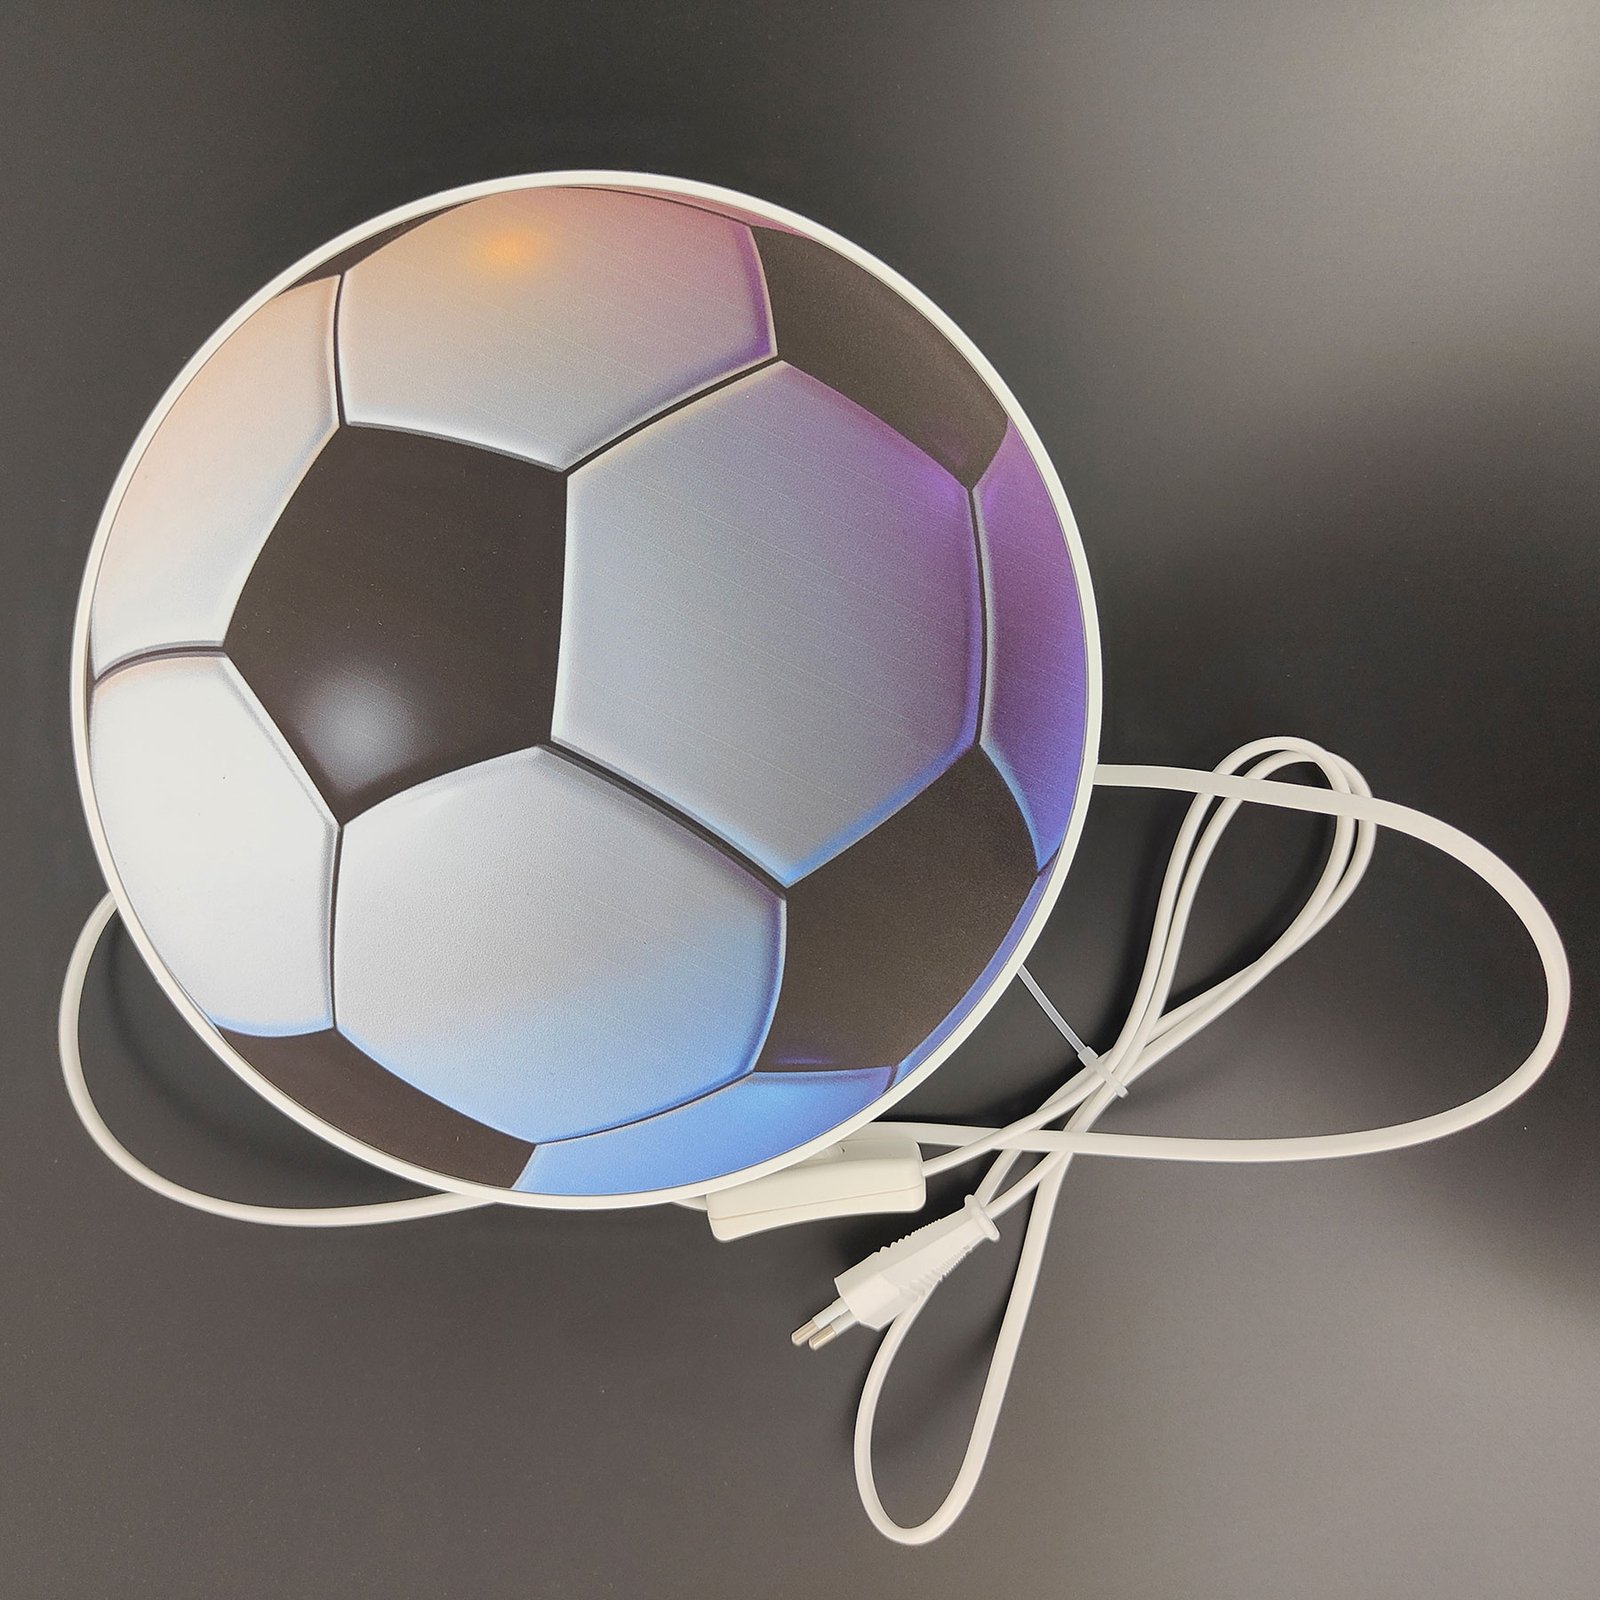 Fodbold væglampe med kontakt og stik